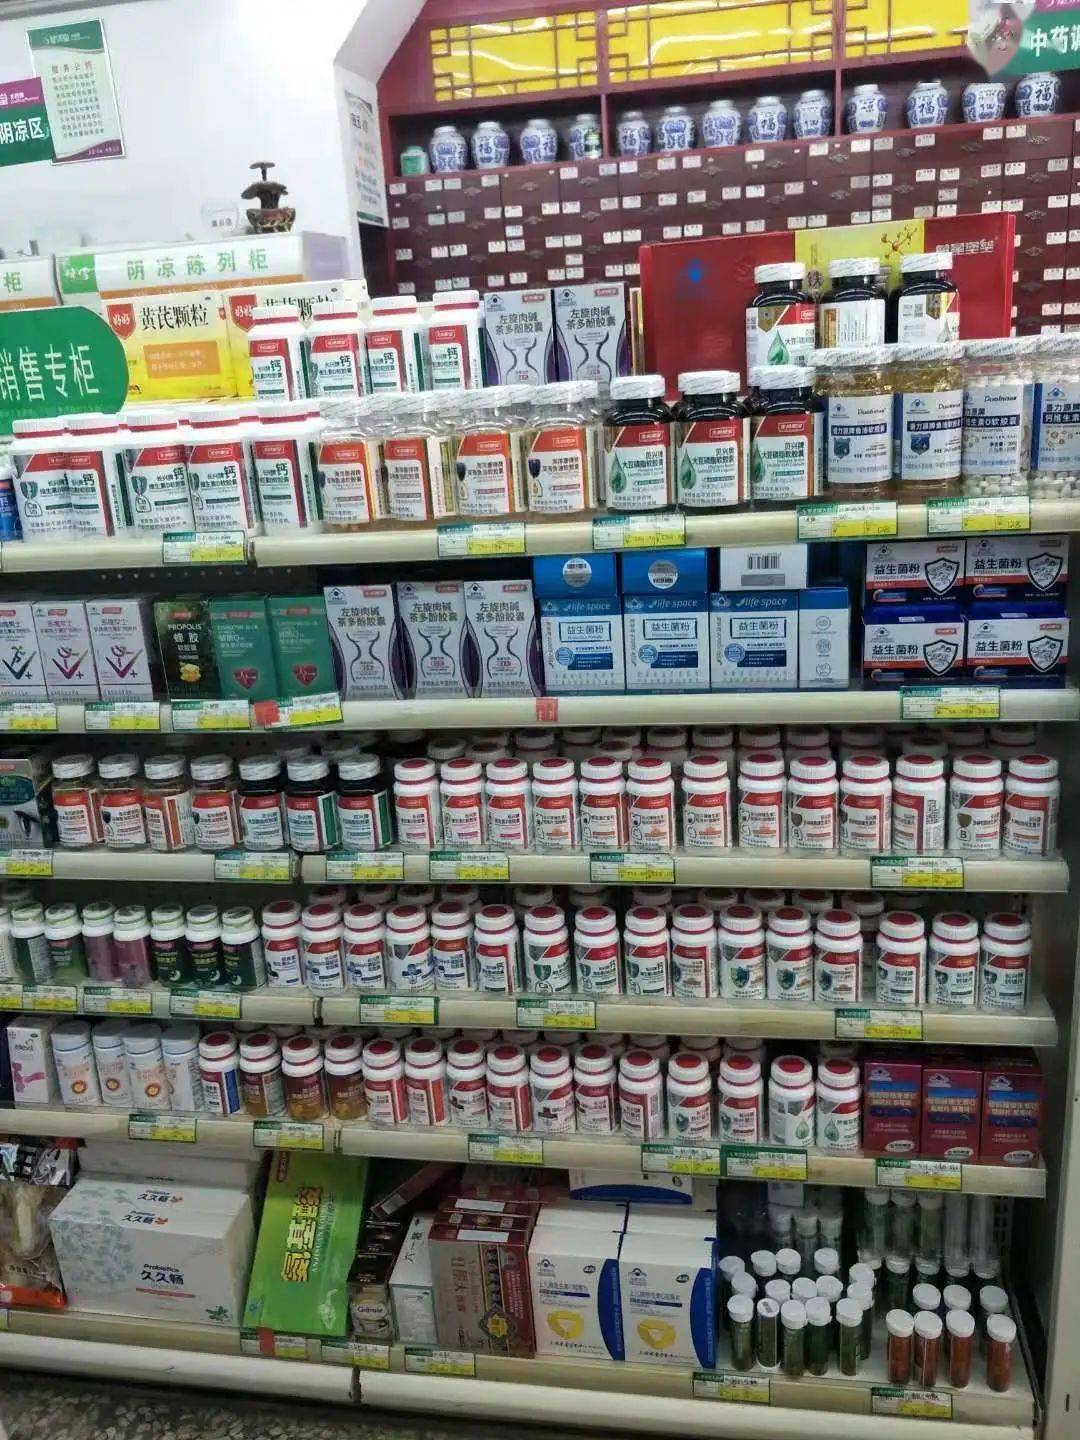 因此,药店内良好的药品陈列与展示应该能够从第一视觉上吸